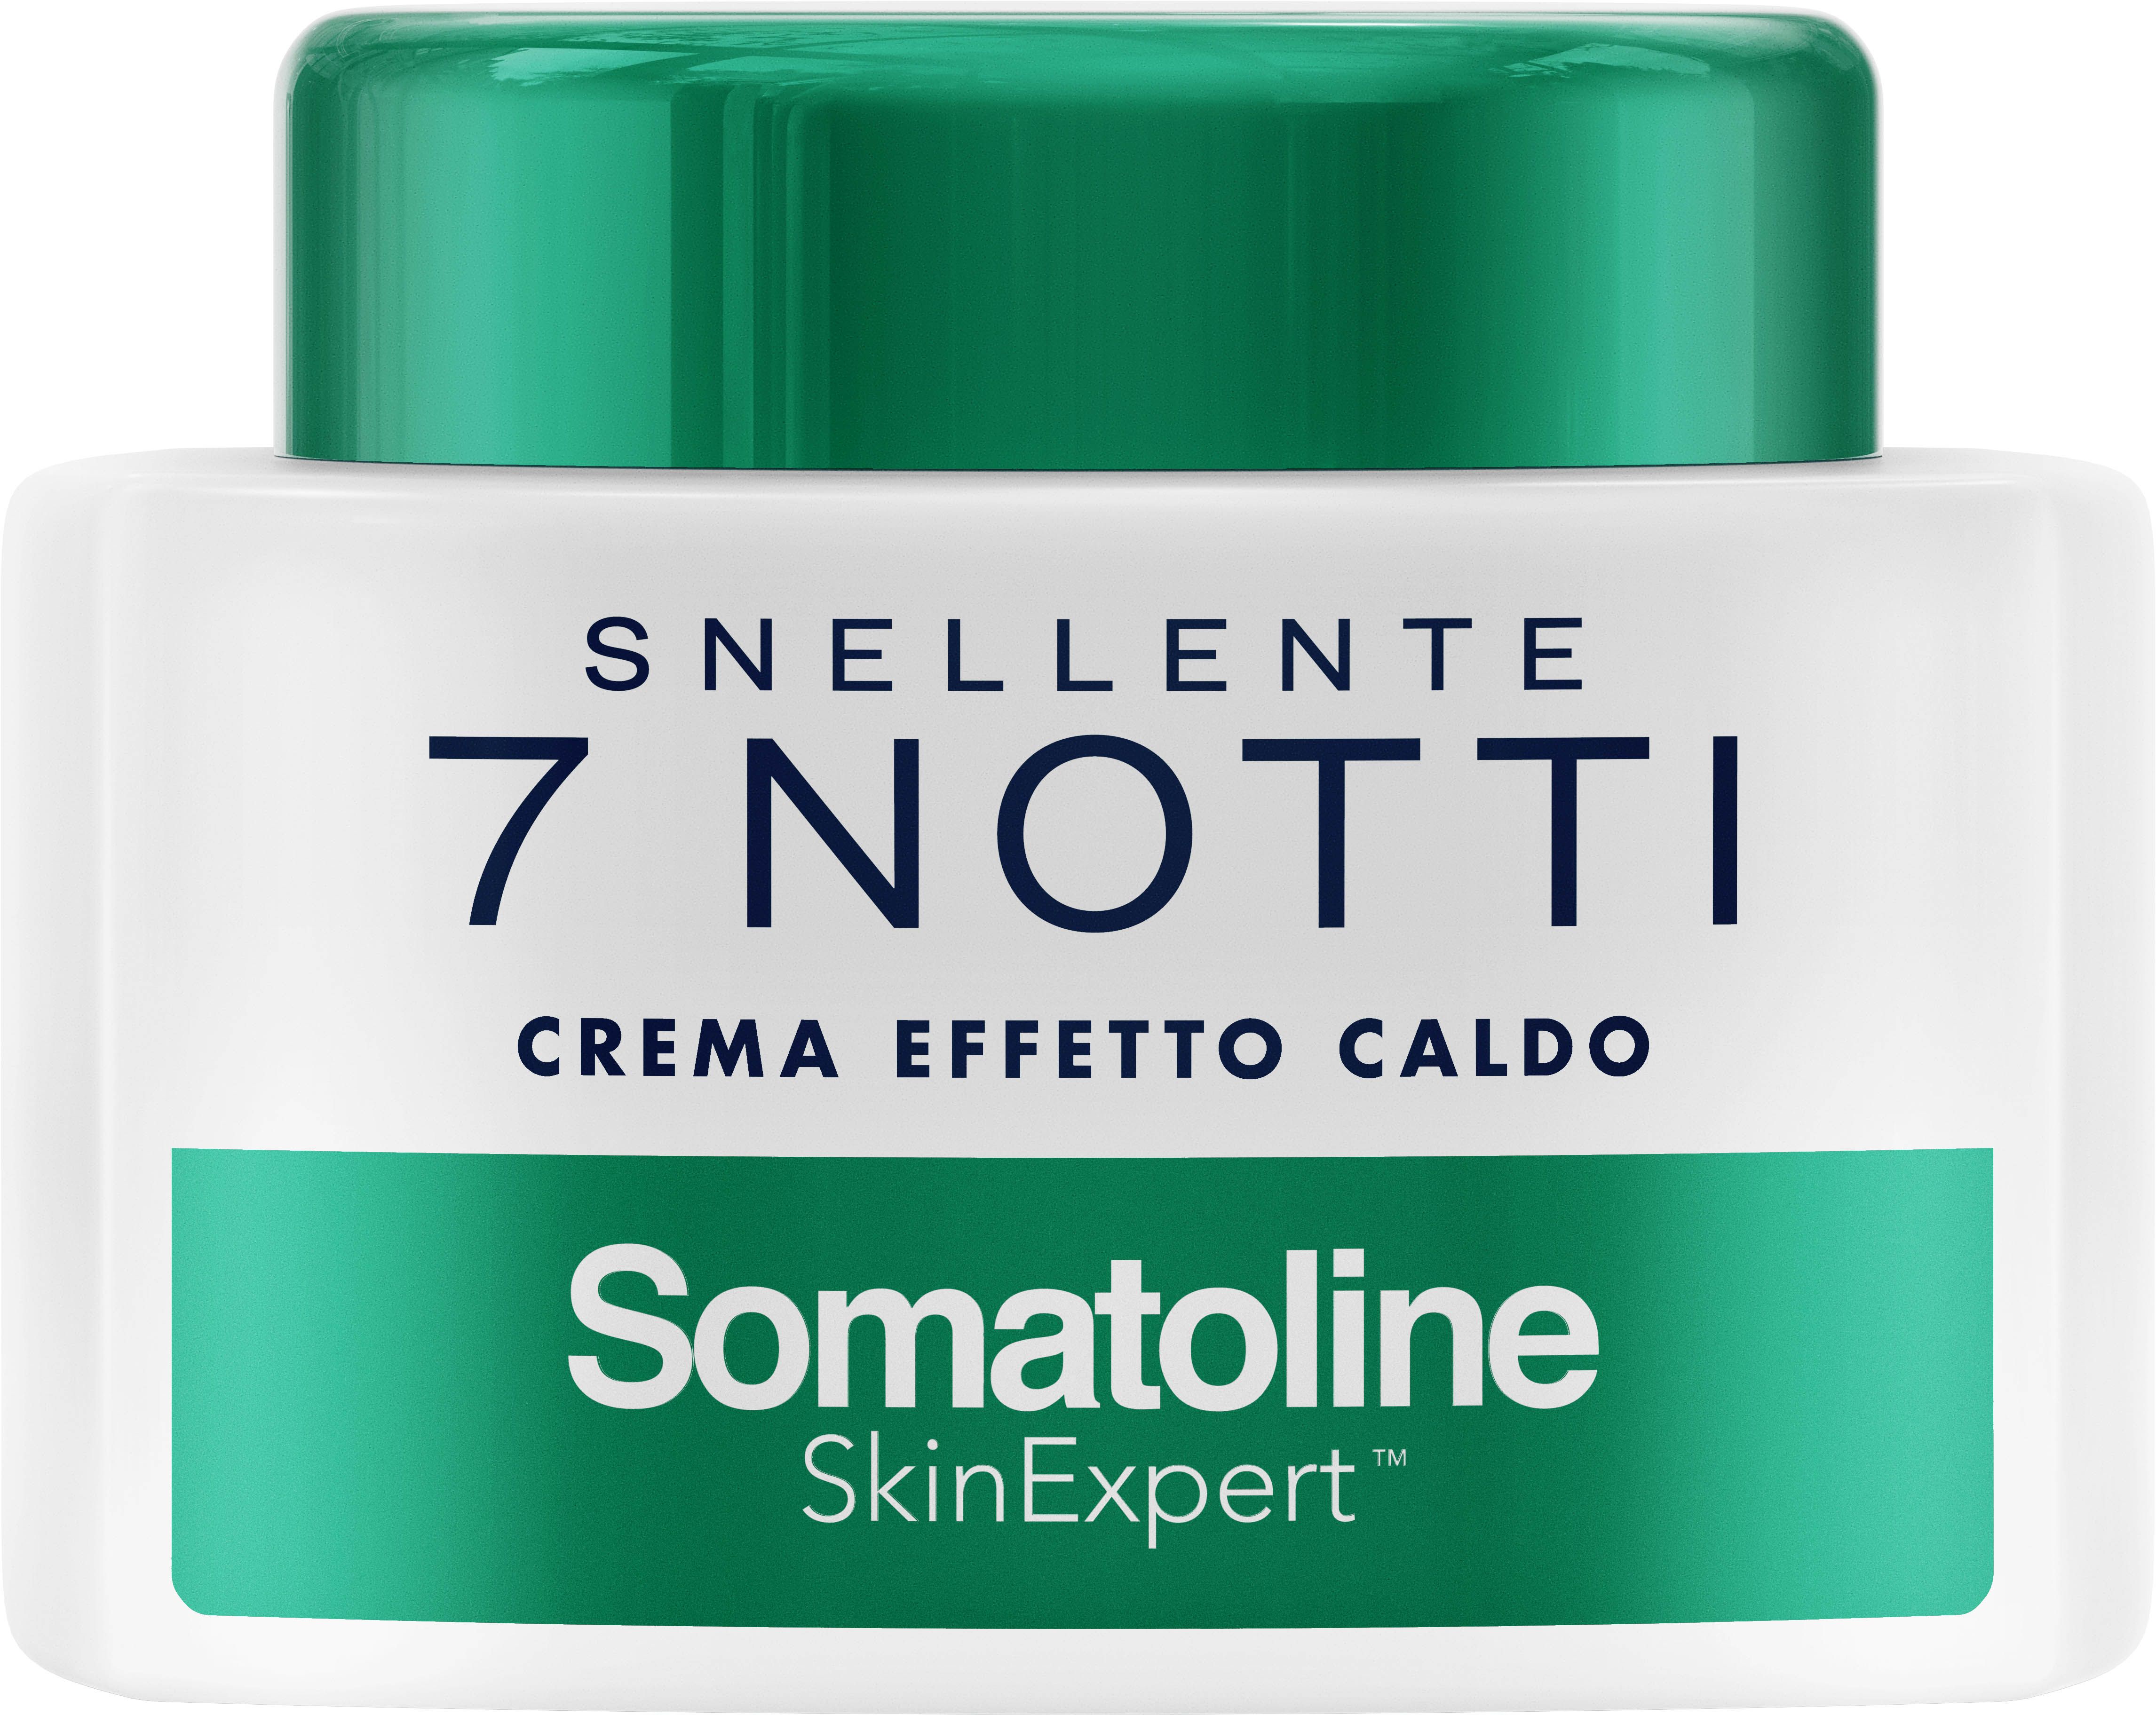 Somatoline Snellente 7 Notti Crema Effetto Caldo 250ml